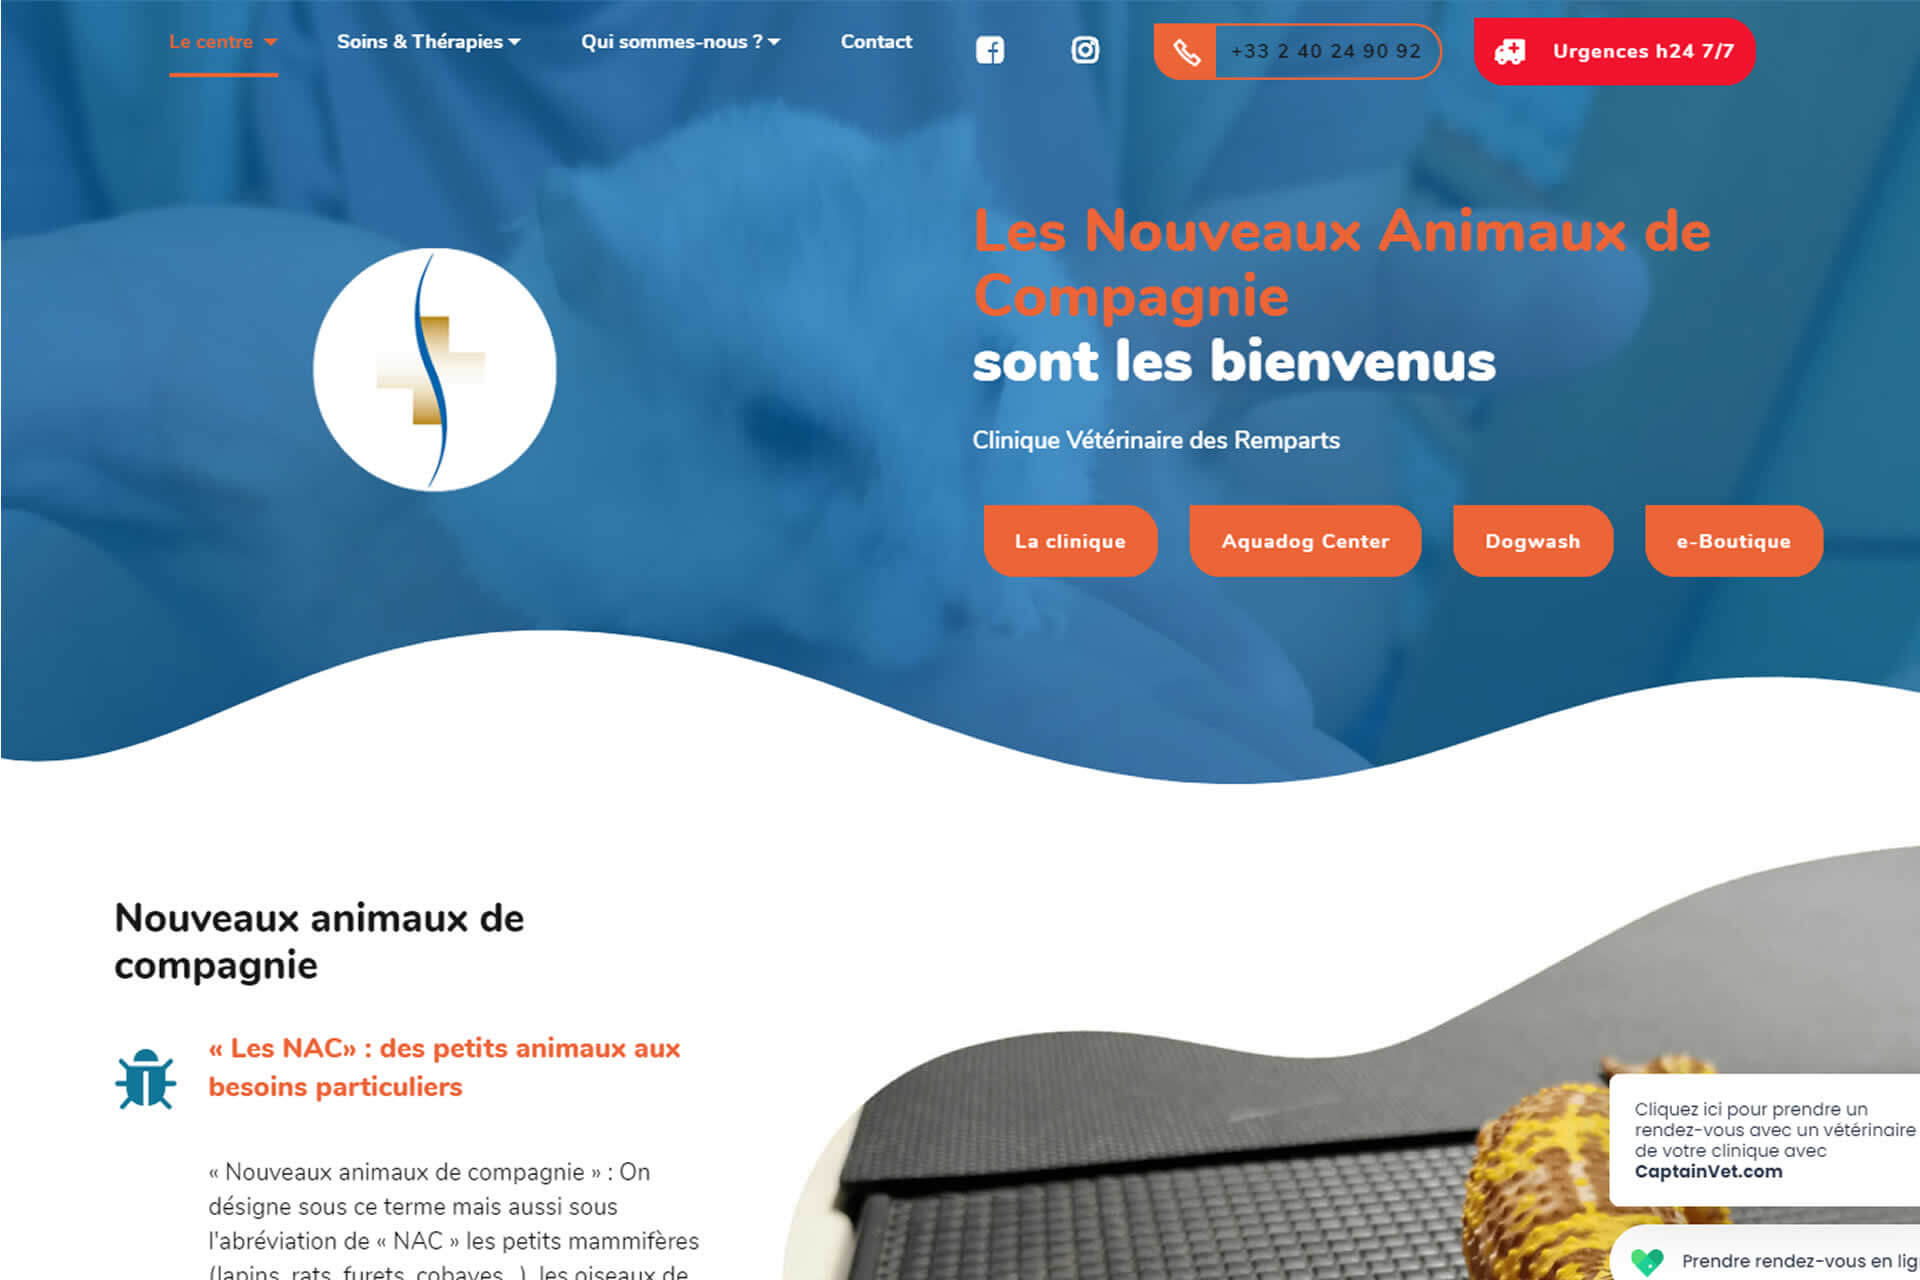 Cliquez pour aller sur le site de La Clinique Vétérinaire des remparts - 44350 Guérande